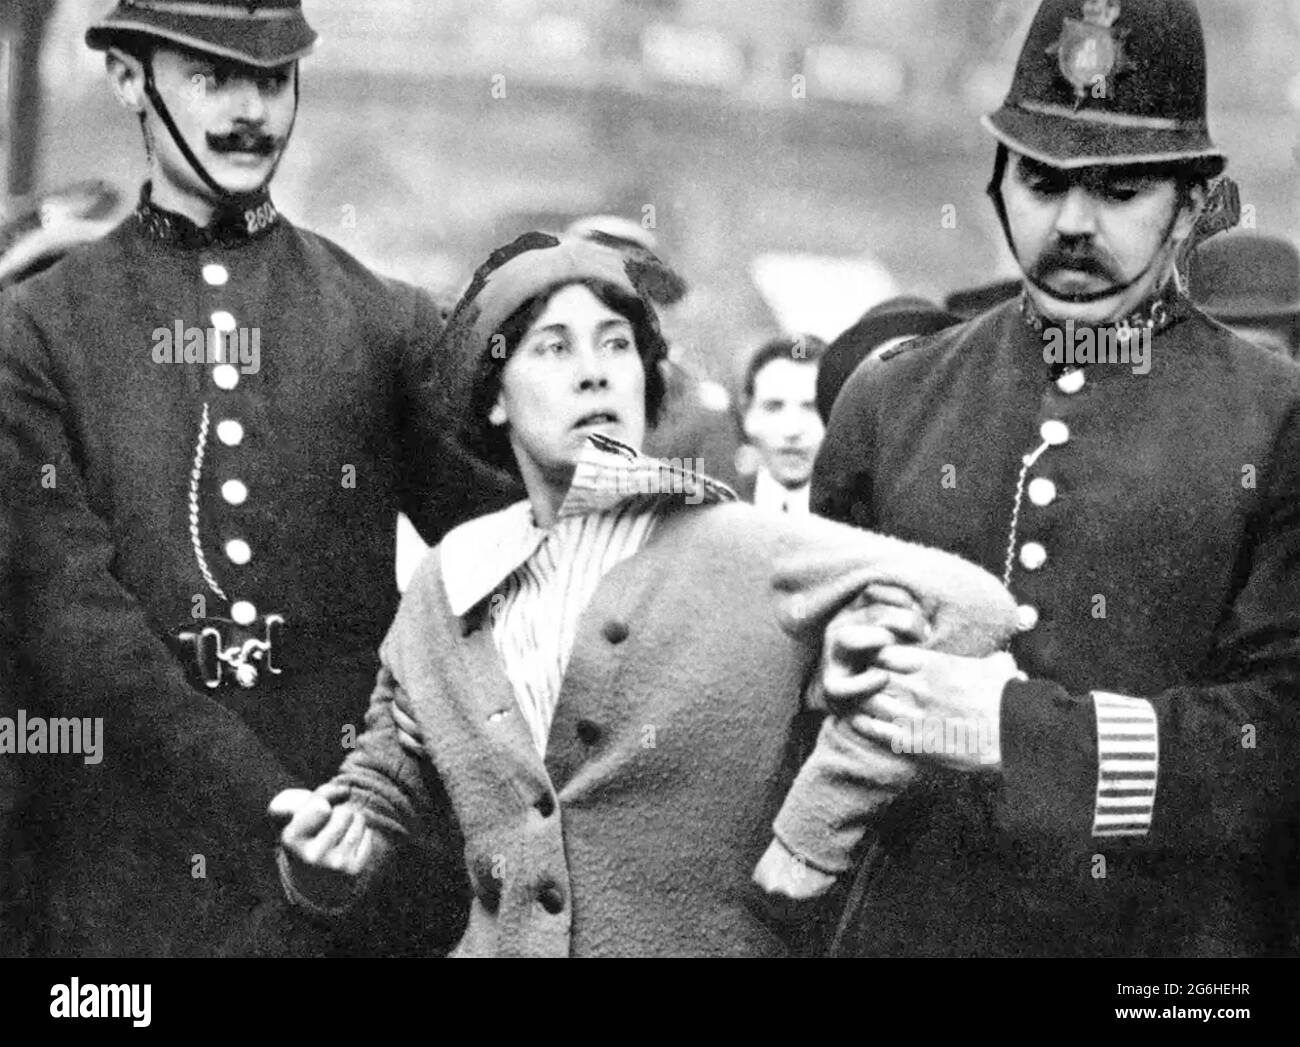 SUFFRAGETTE arrestata a Londra nel 1914 Foto Stock